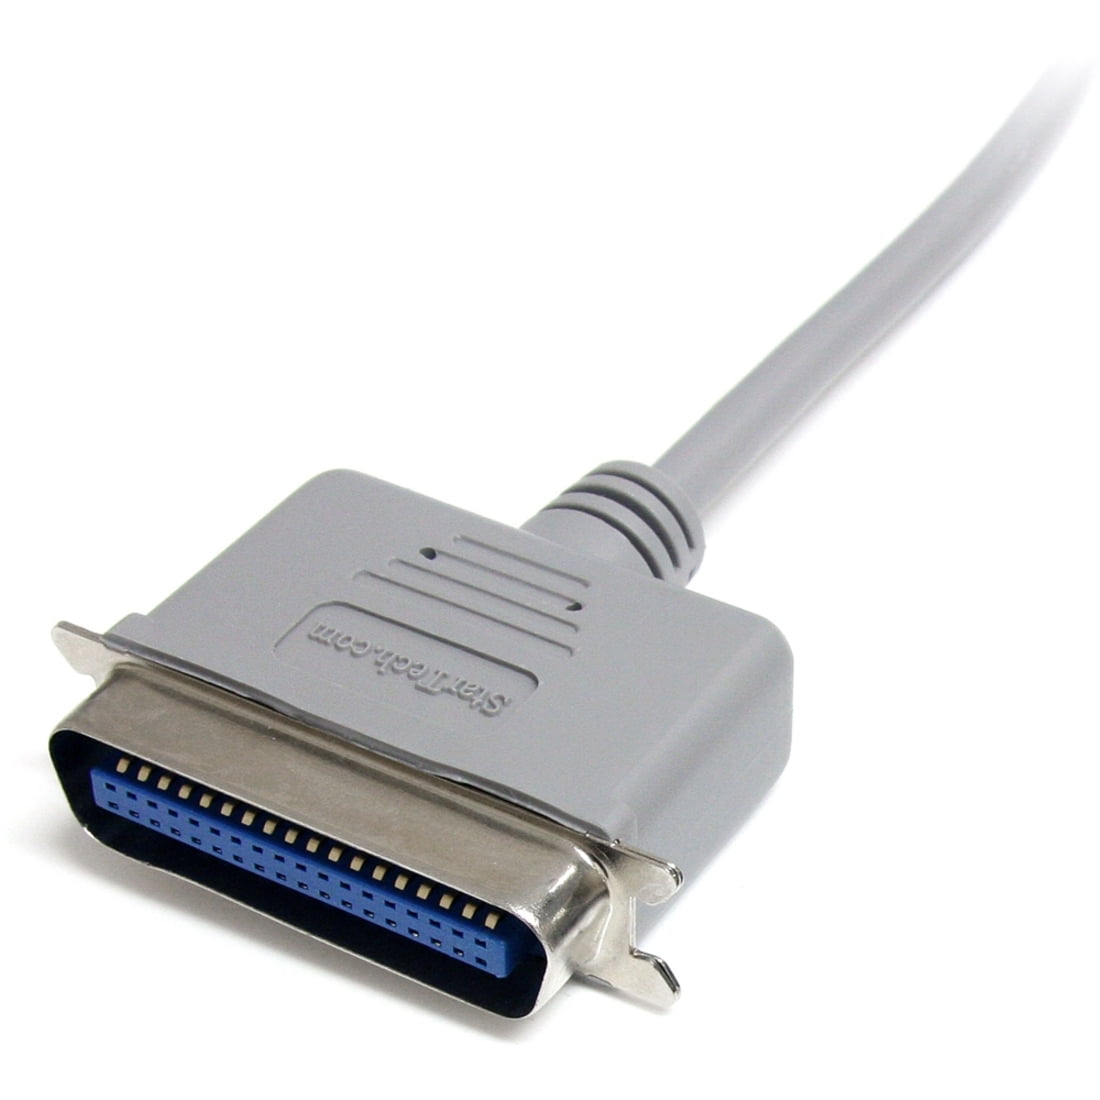 APM Câble dimprimante parallèle DB 25 C 36 M/M 1,5